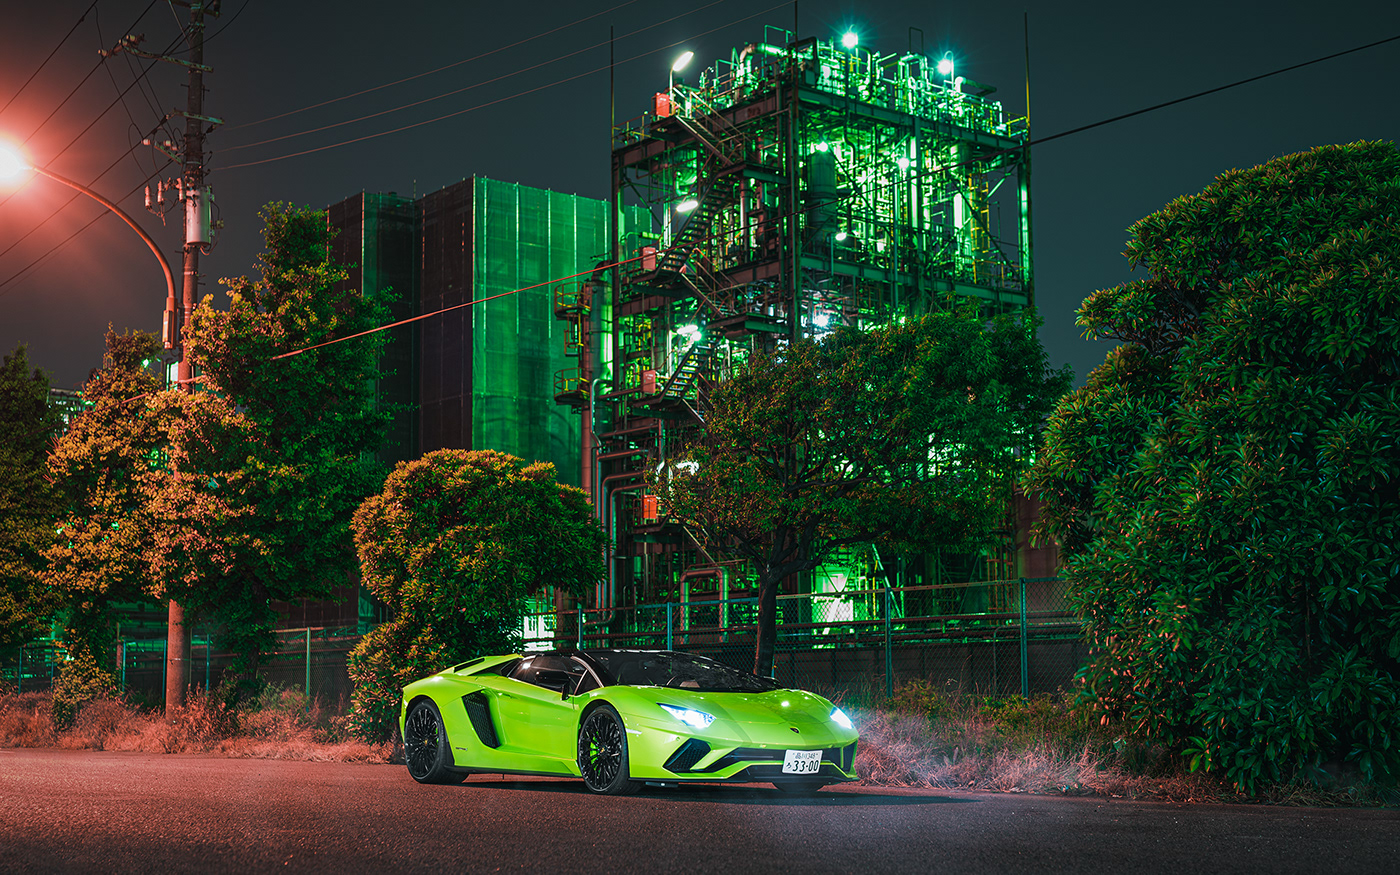 Auto aventador Aventador S commercial japan lamborghini Photography  photoshop tokyo v12